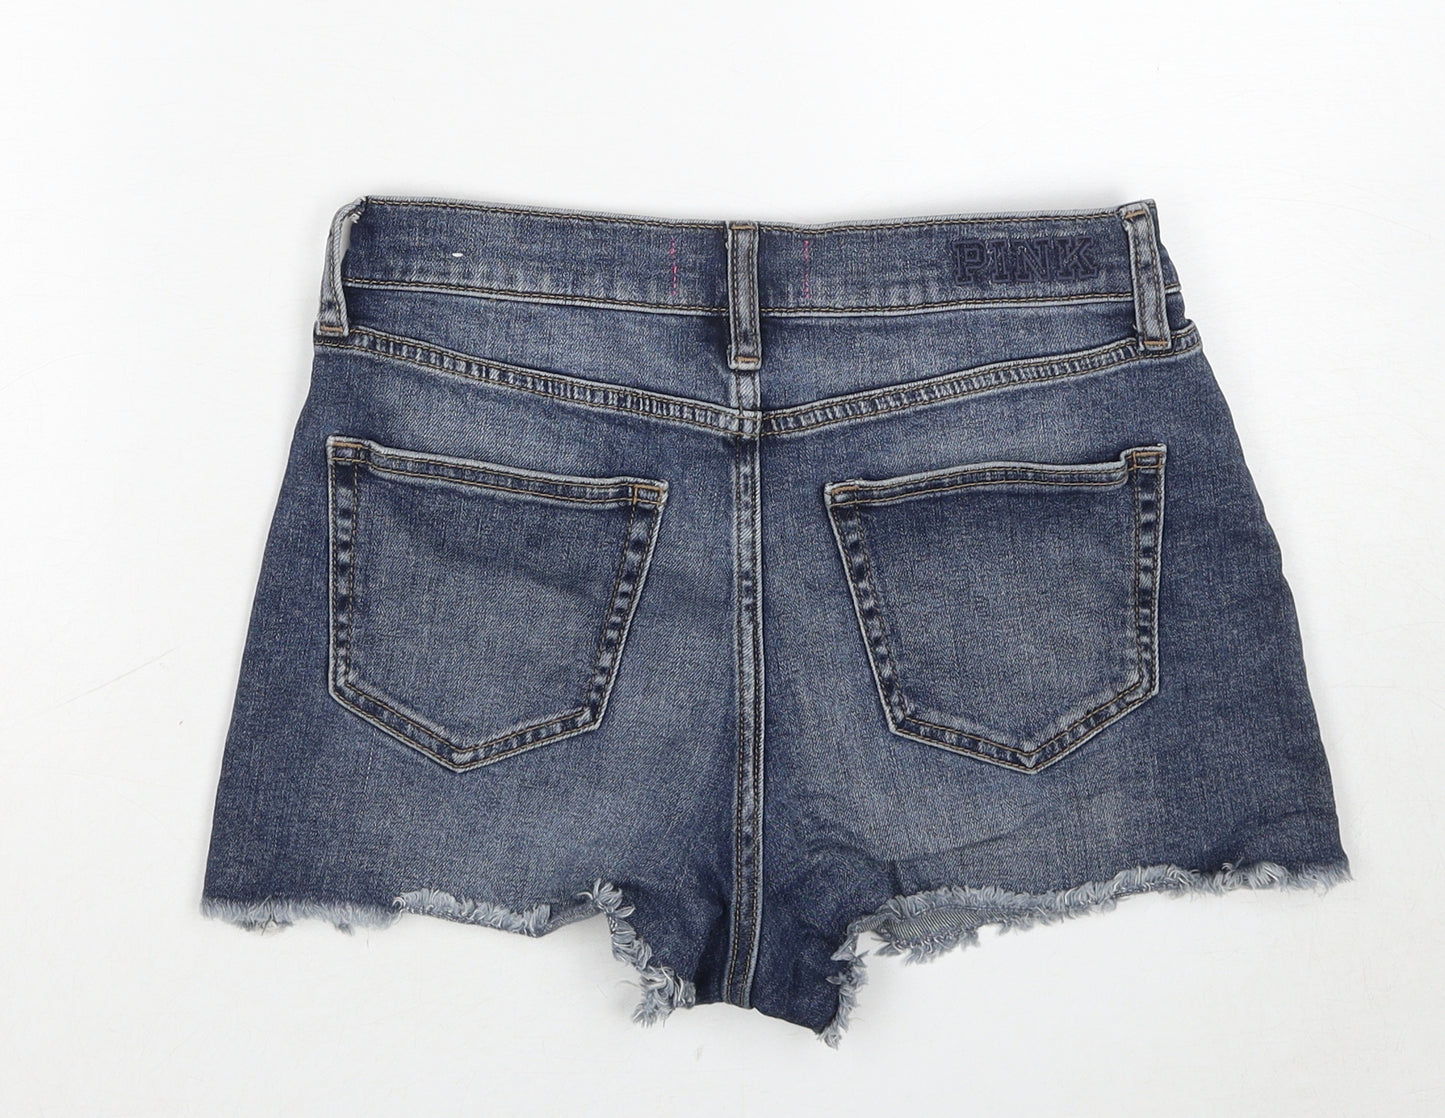 PINK Womens Blue Cotton Cut-Off Shorts Size 6 Regular Zip